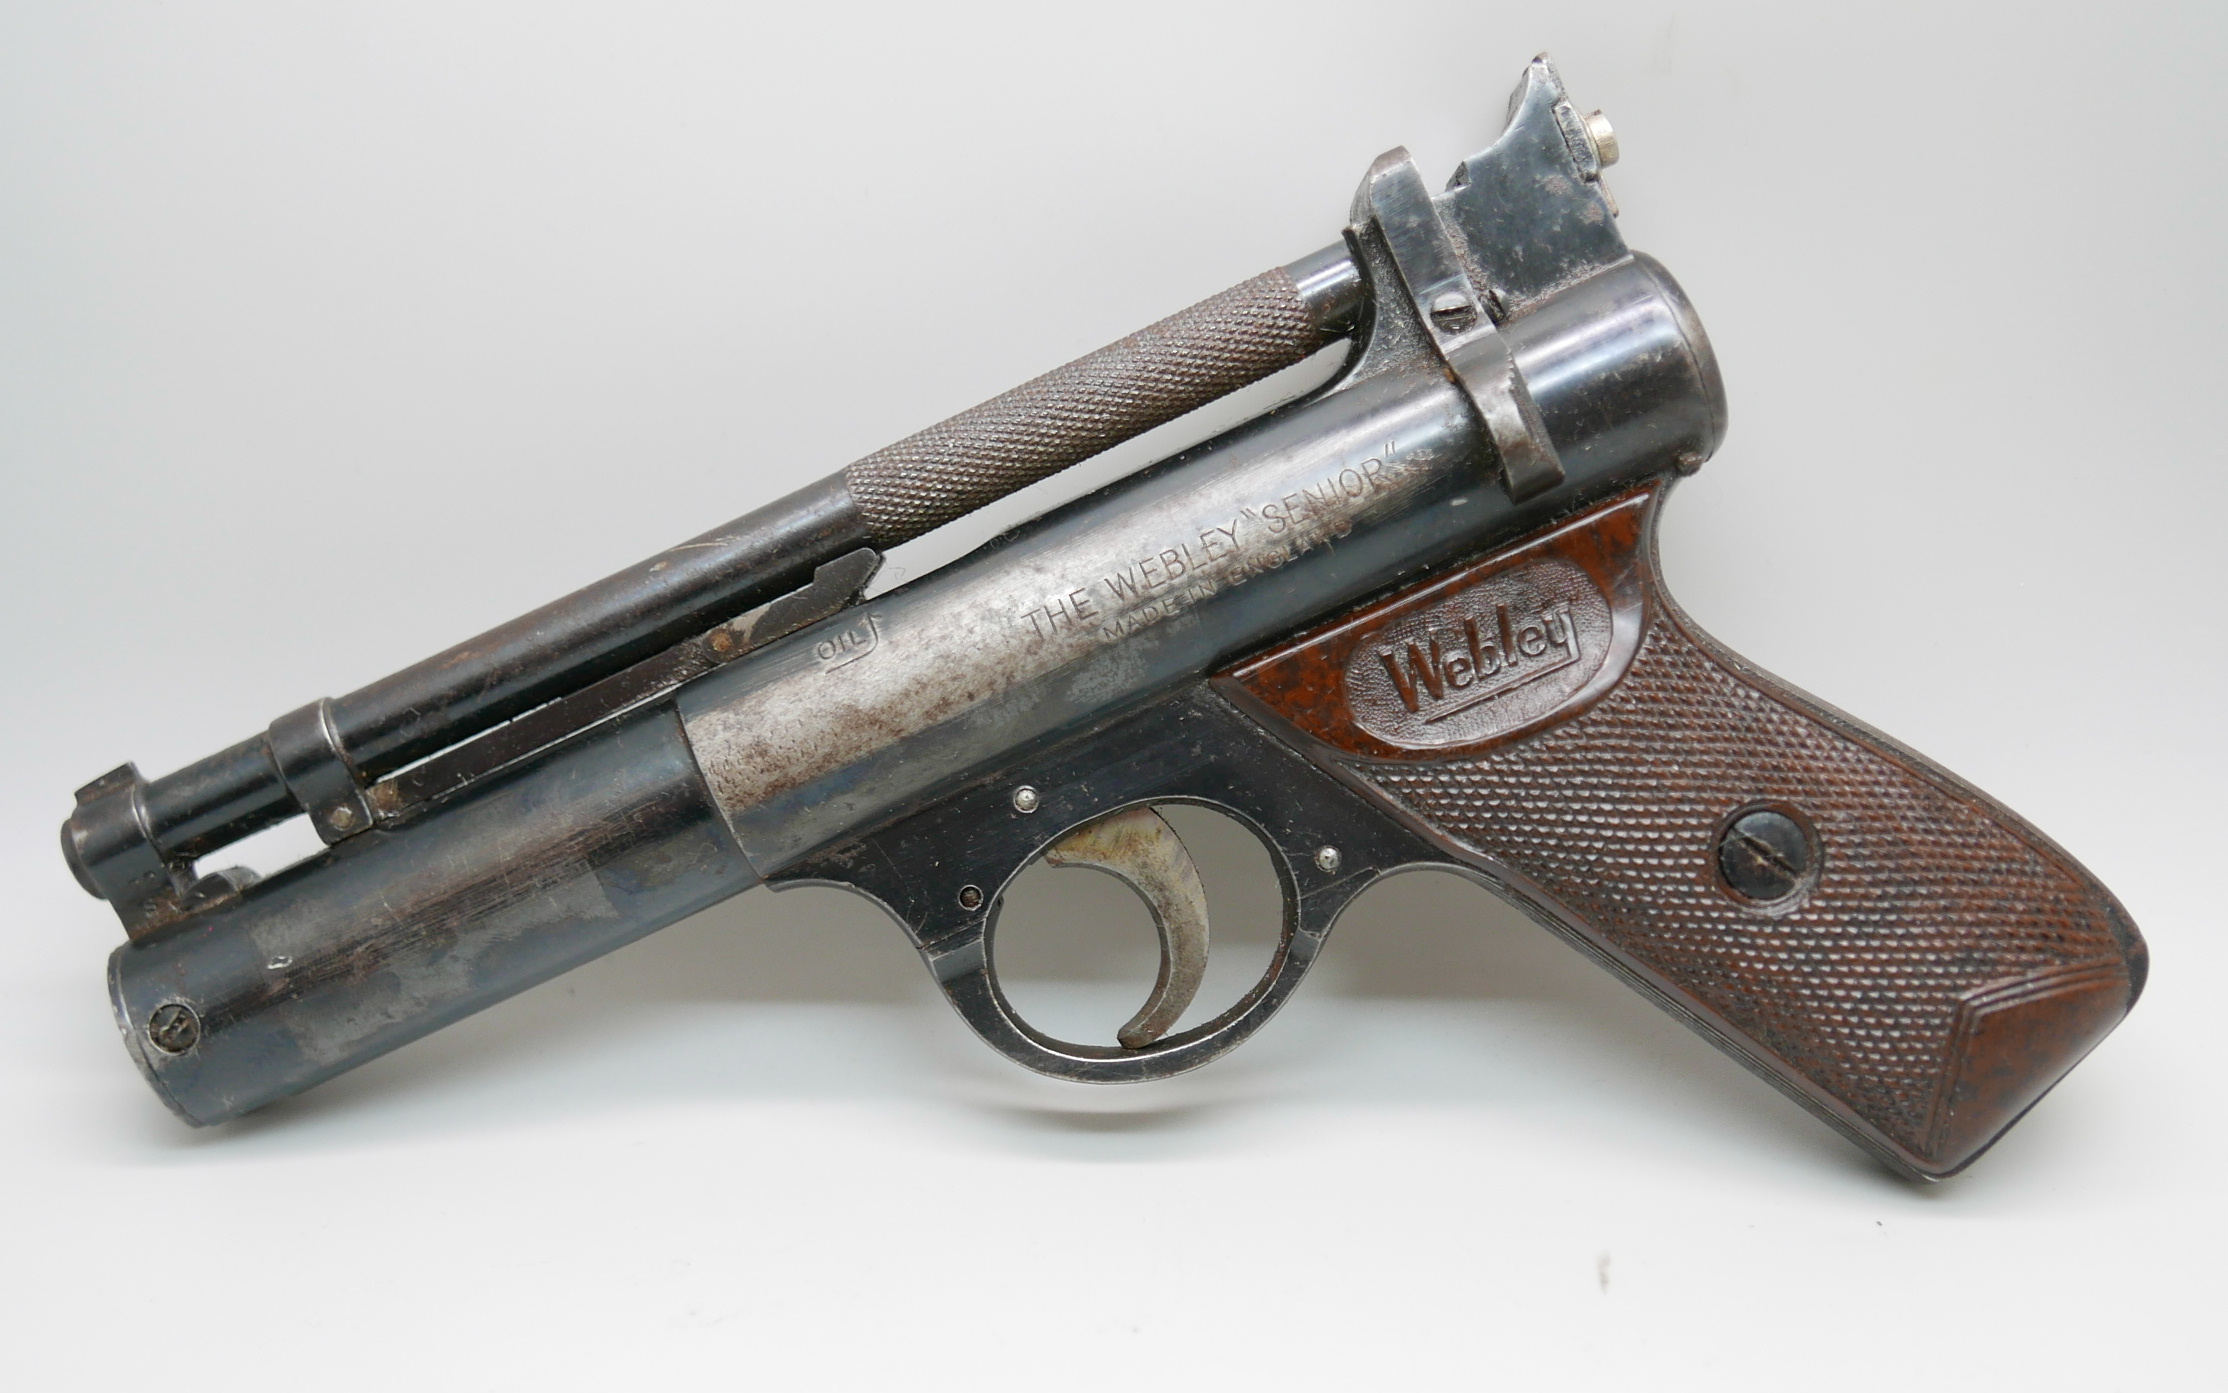 A 'The Webley' Senior pellet gun, made in England